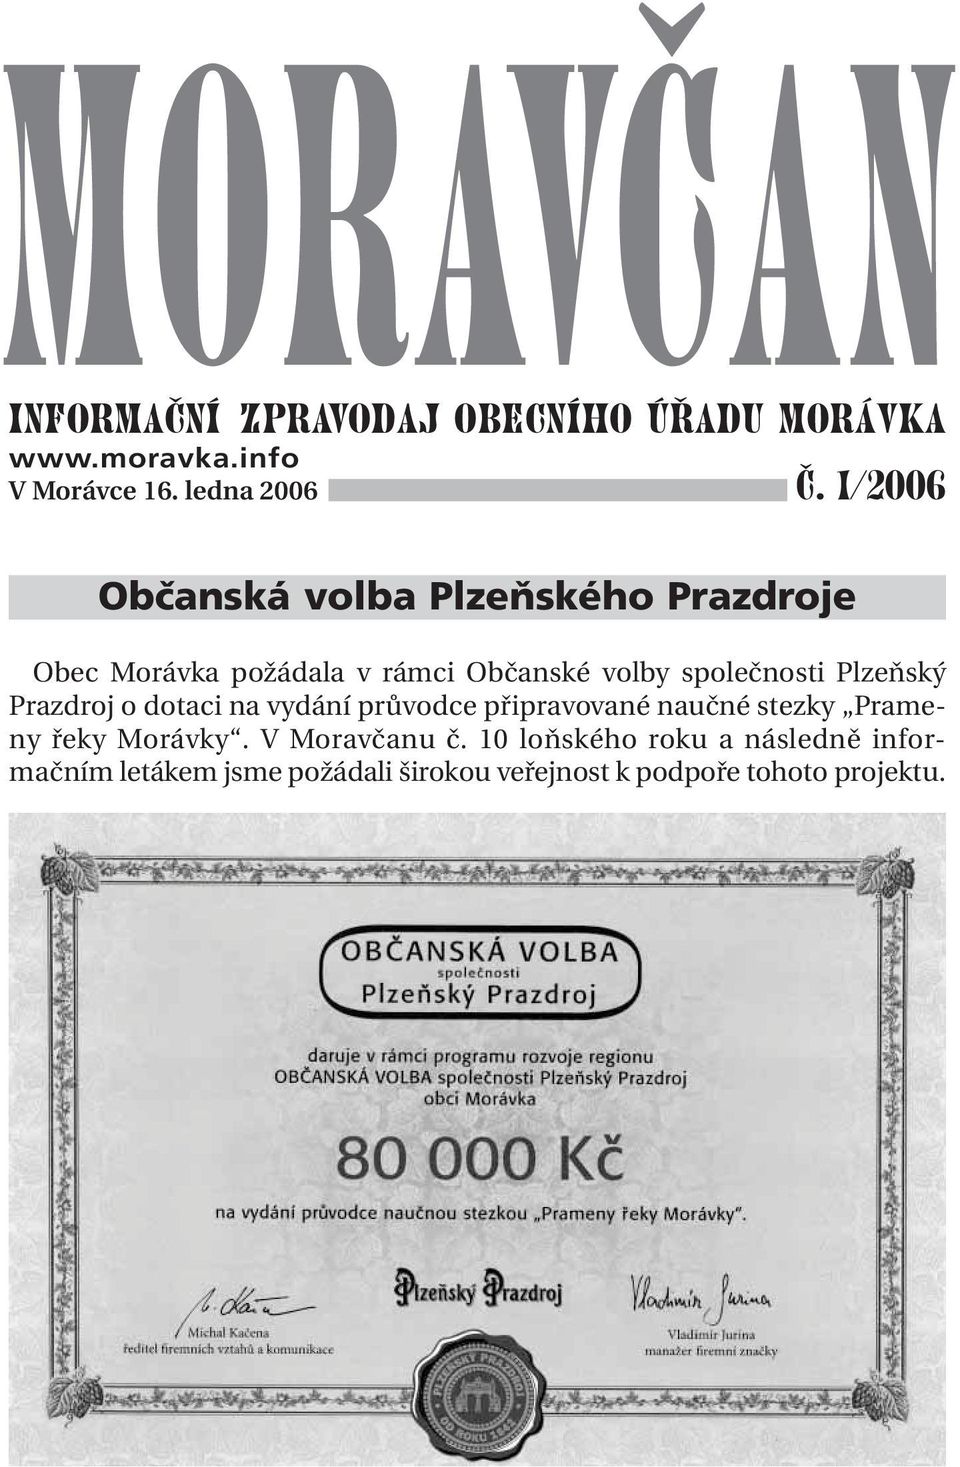 Plzeňský Prazdroj o dotaci na vydání průvodce připravované naučné stezky Prameny řeky Morávky.